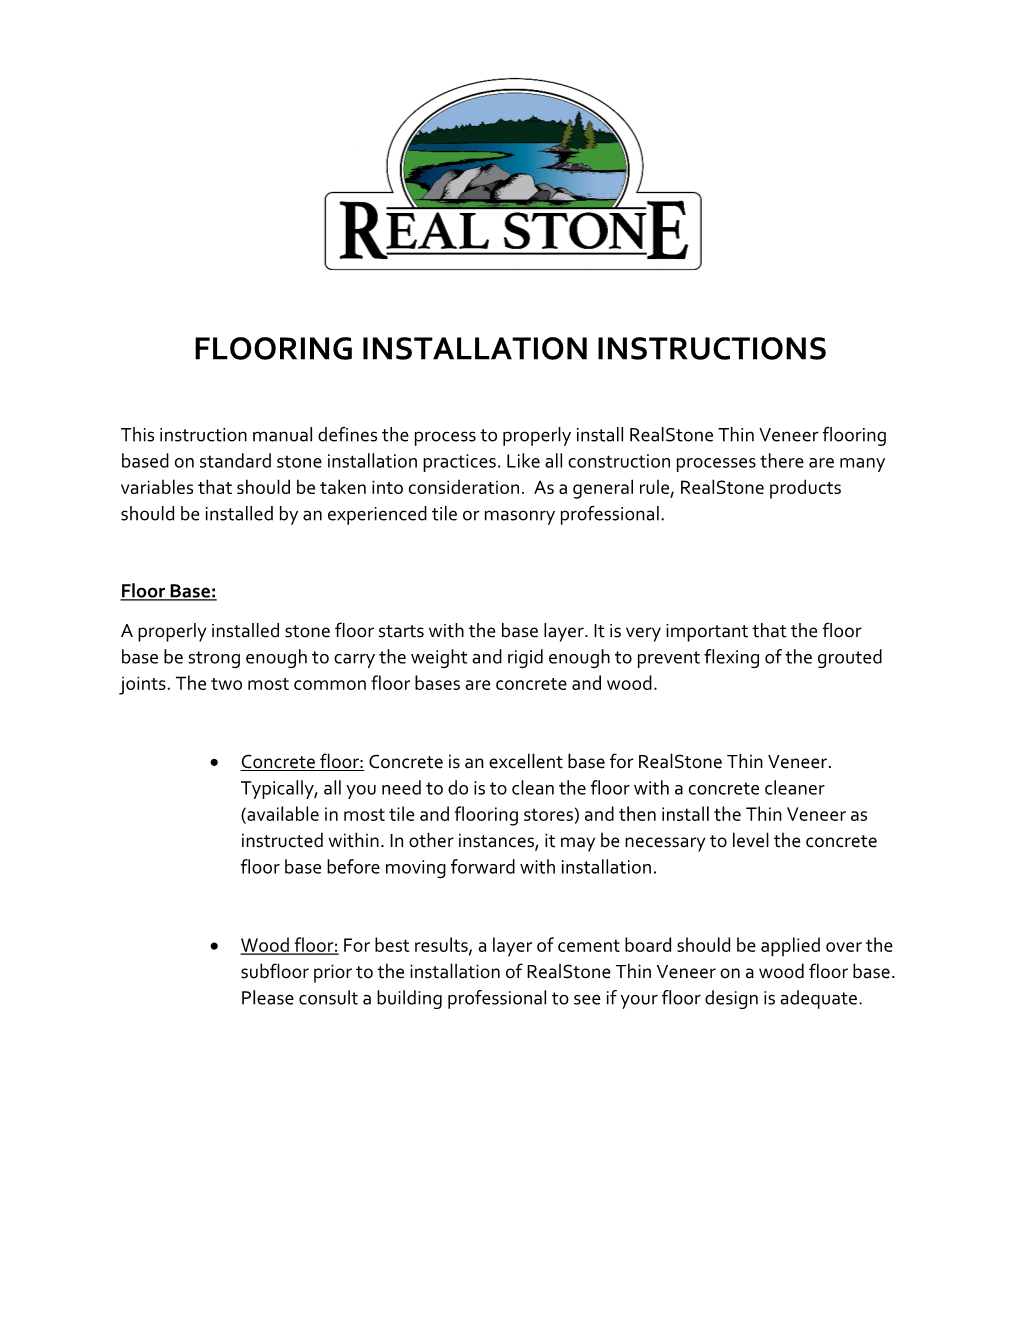 Flooring Installation Instructions